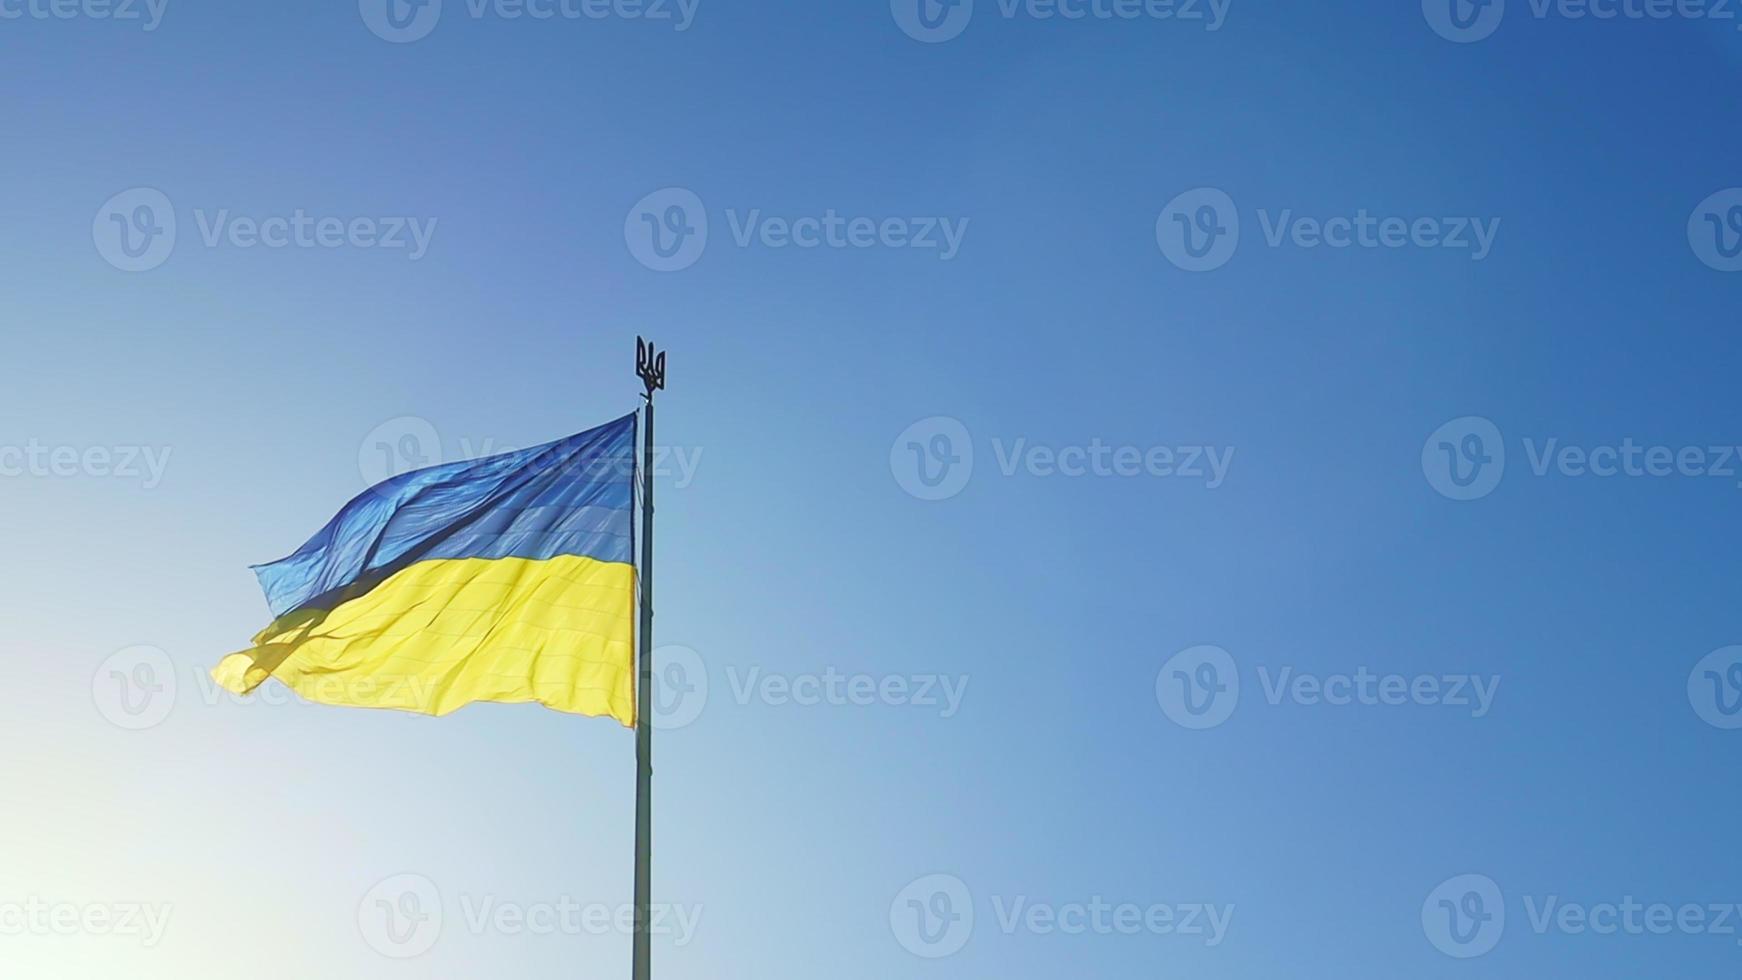 die ukrainische flagge der blauen und gelben nationalfarben am fahnenmast flattert im wind gegen den blauen himmel und die morgendliche aufgehende sonne. das offizielle Staatssymbol der Ukrainer. Patriotismus. foto